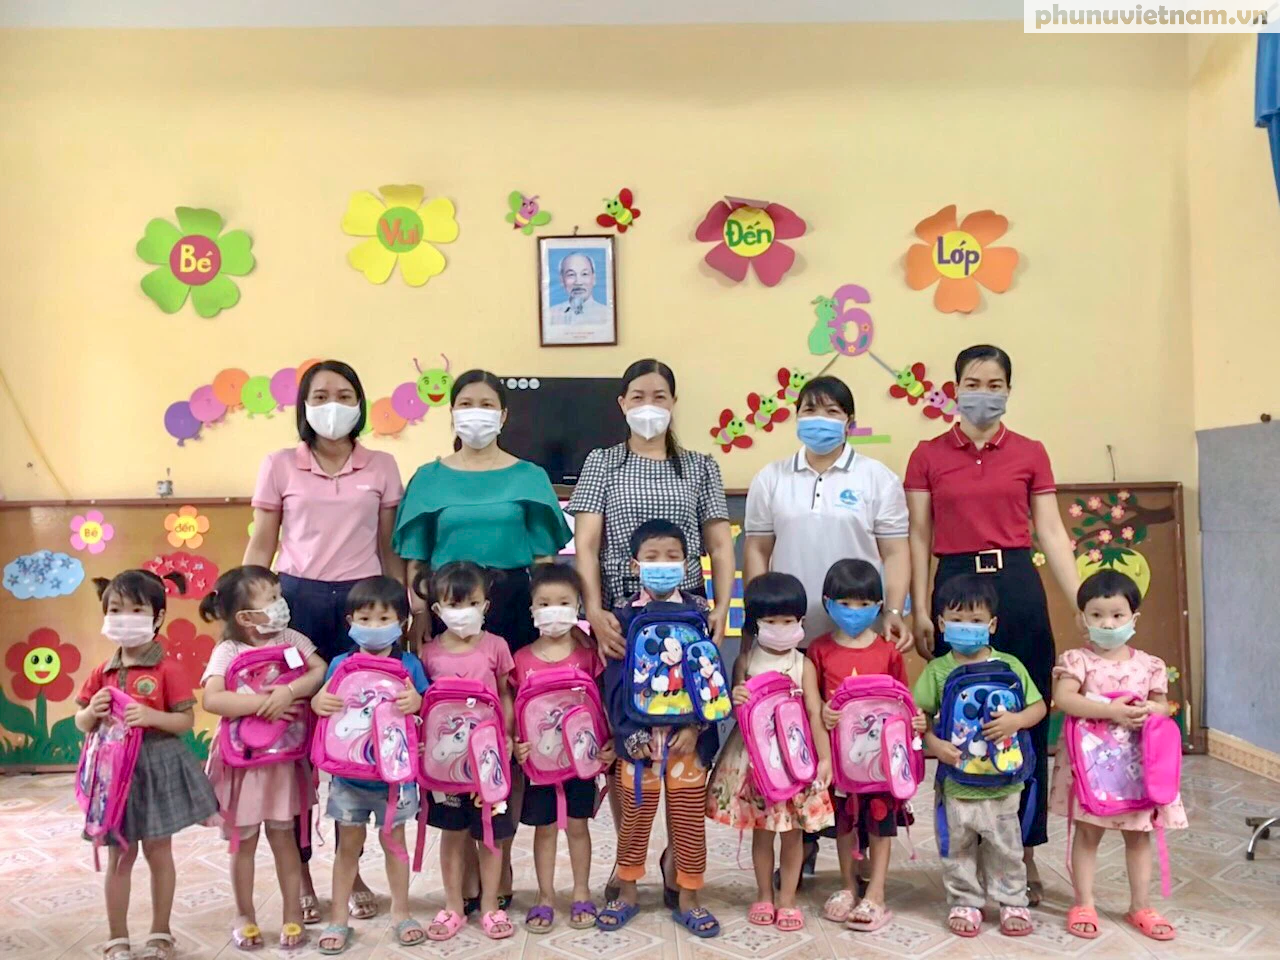 Phụ nữ Chí Linh trao tặng hơn 350 suất quà cho trẻ em nghèo nhân dịp khai giảng năm học mới - Ảnh 5.